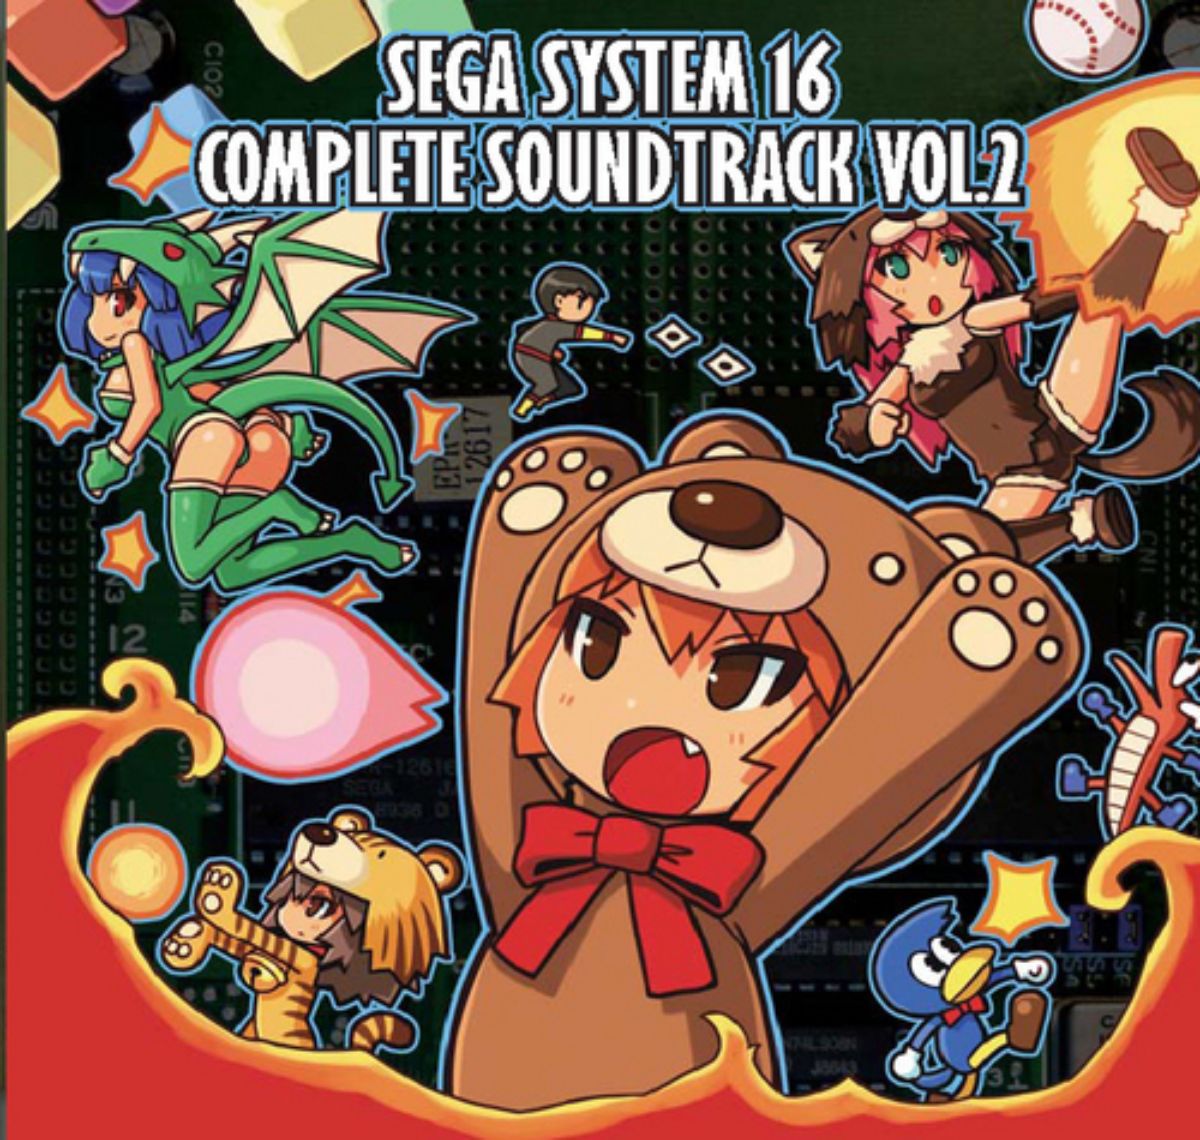 Sega System 16 Complete Soundtrack Vol.2